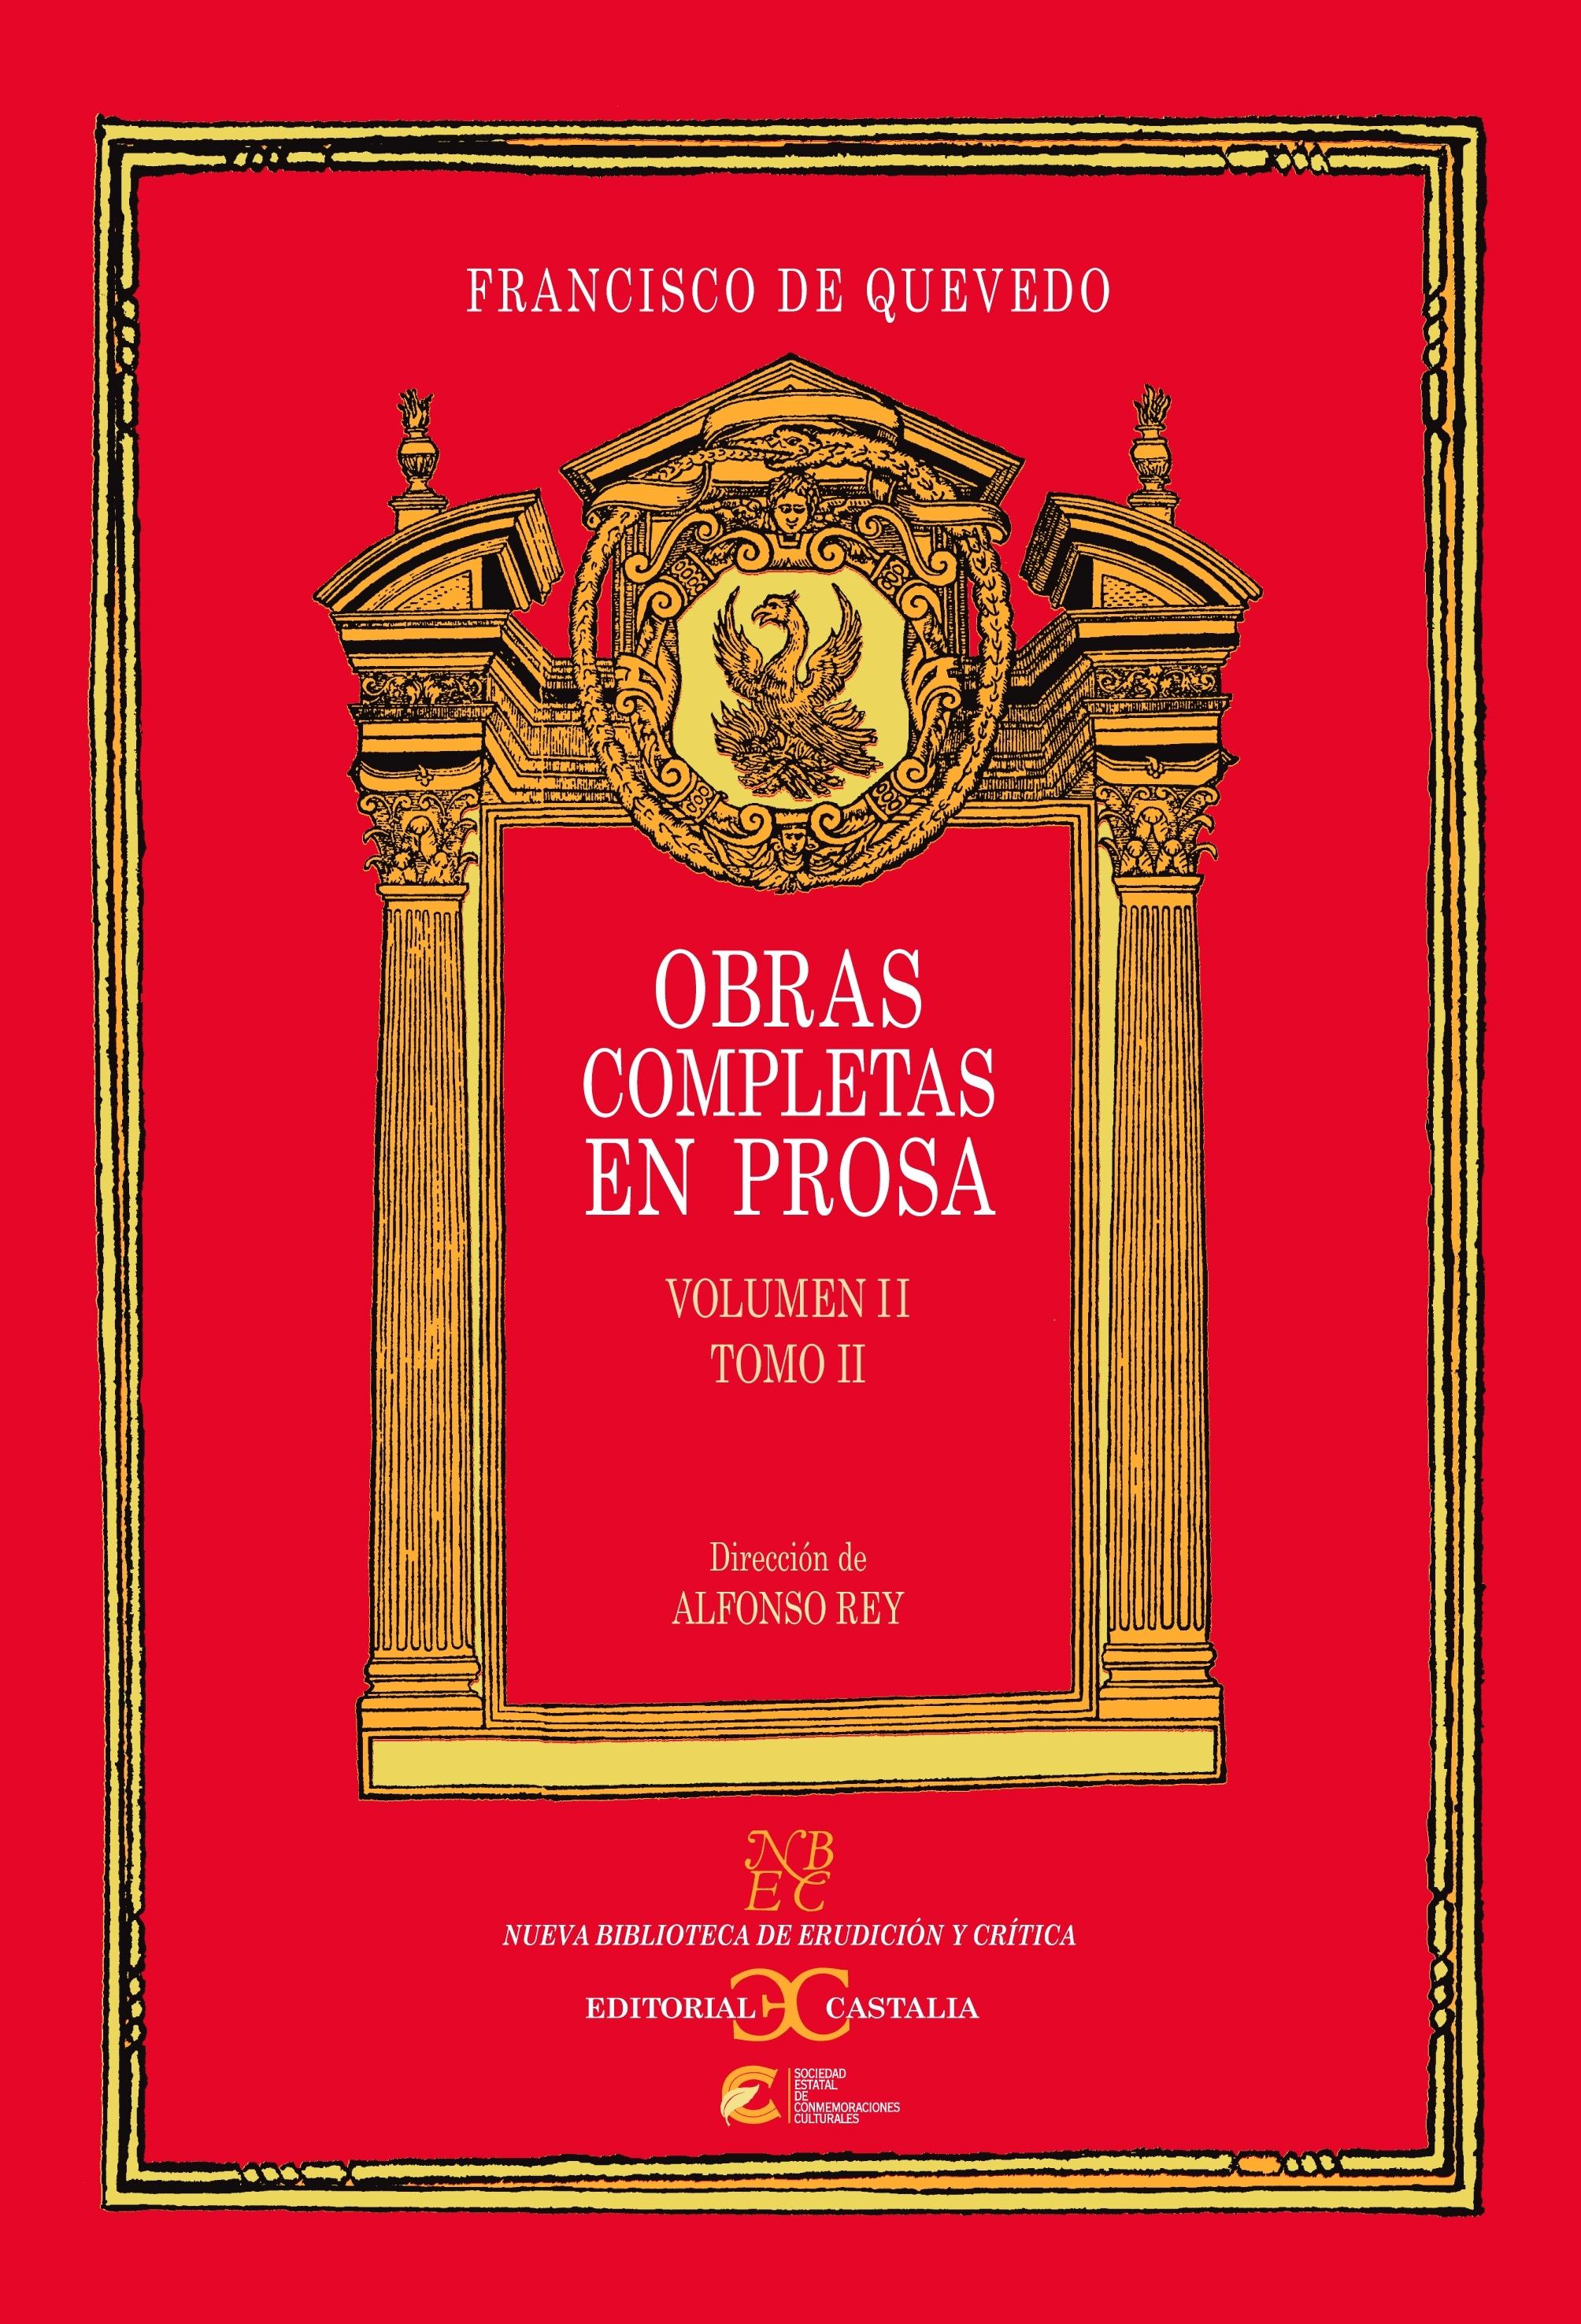 Obras completas en prosa - Volumen 2 - Tomo 2 "(Francisco de Quevedo)". 